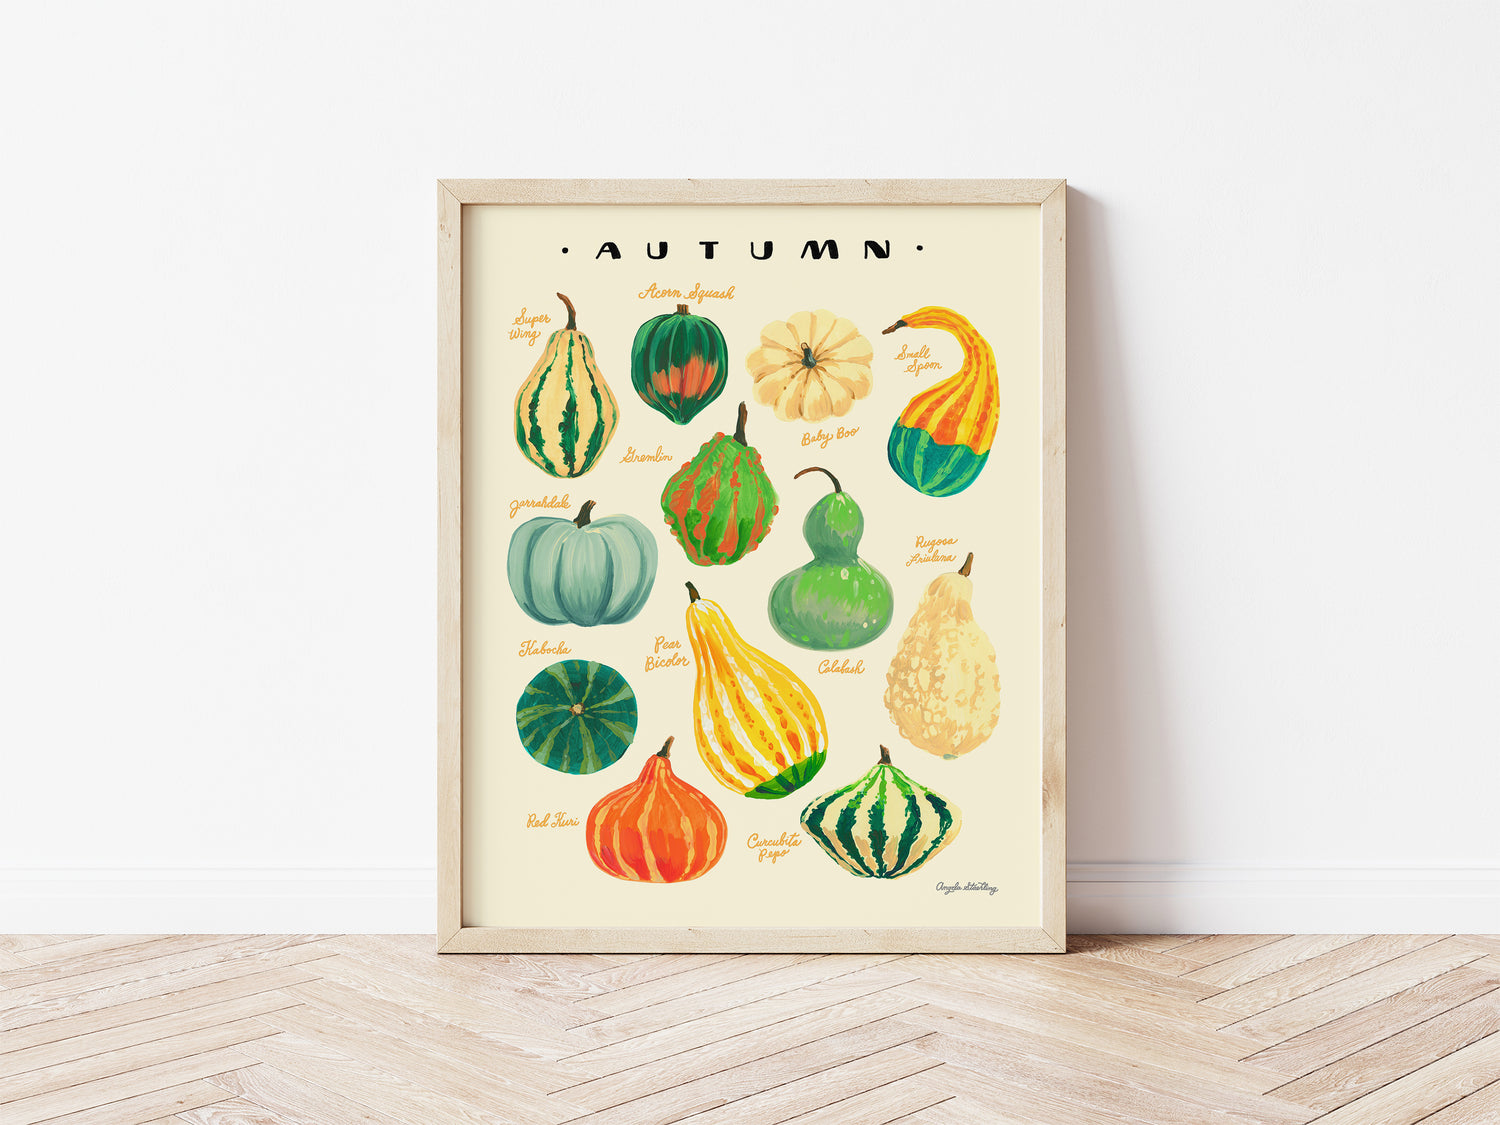 Harvest gourds illustration in wooden frame